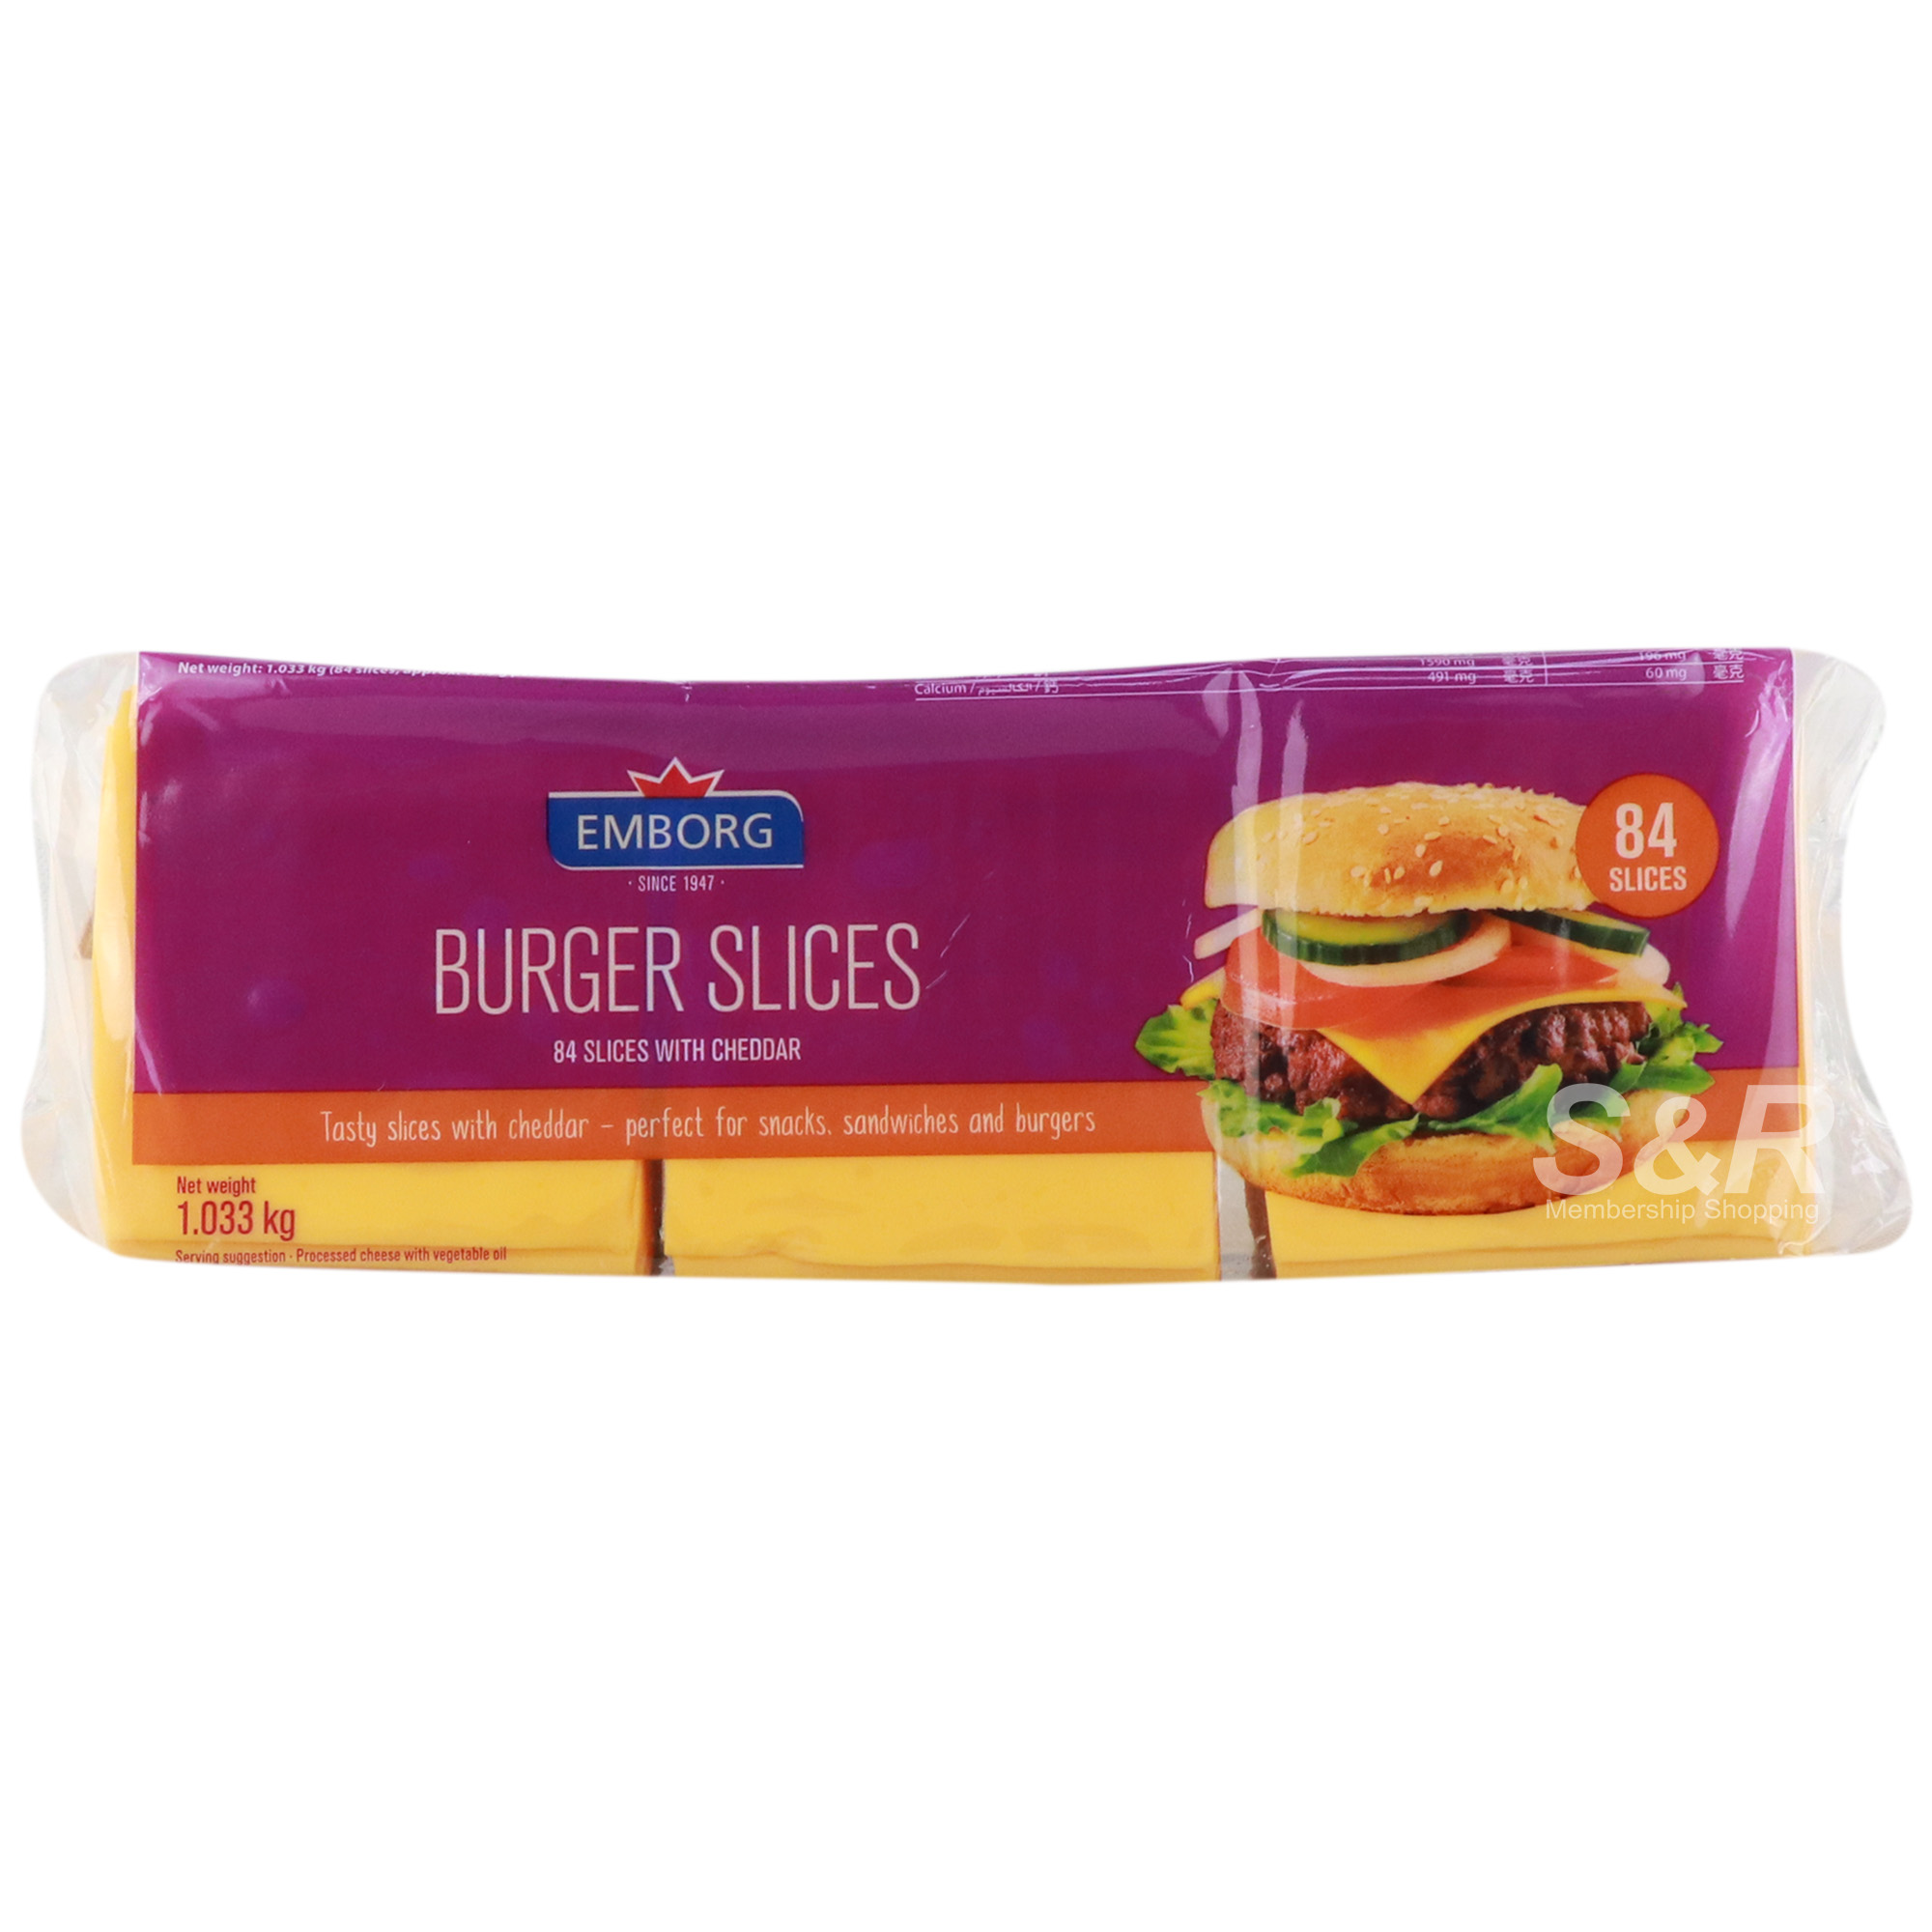 Emborg Burger Slices Colored 84 slices